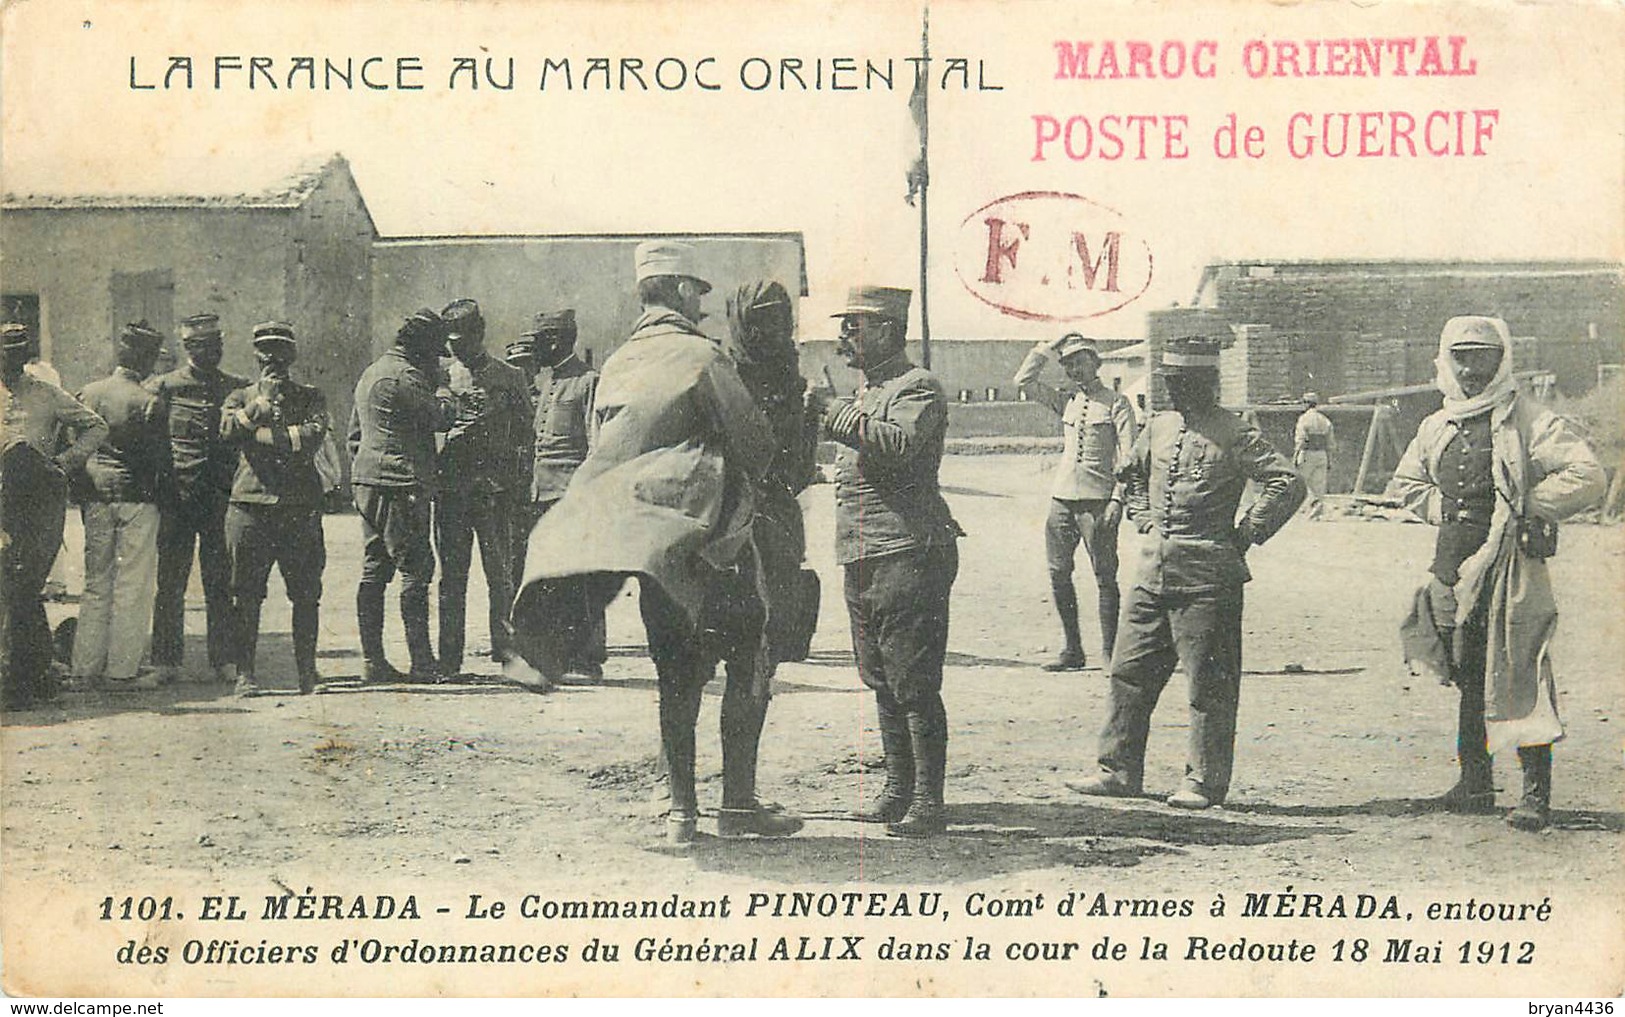 2° REGIMENT DE SAPHIS - (BEAU CACHET)CAMPAGNE DU MAROC ORIENTAL - 1912 - POSTE DE GUERCIF (CACHET) F.M.(CACH-ET) - Andere Kriege